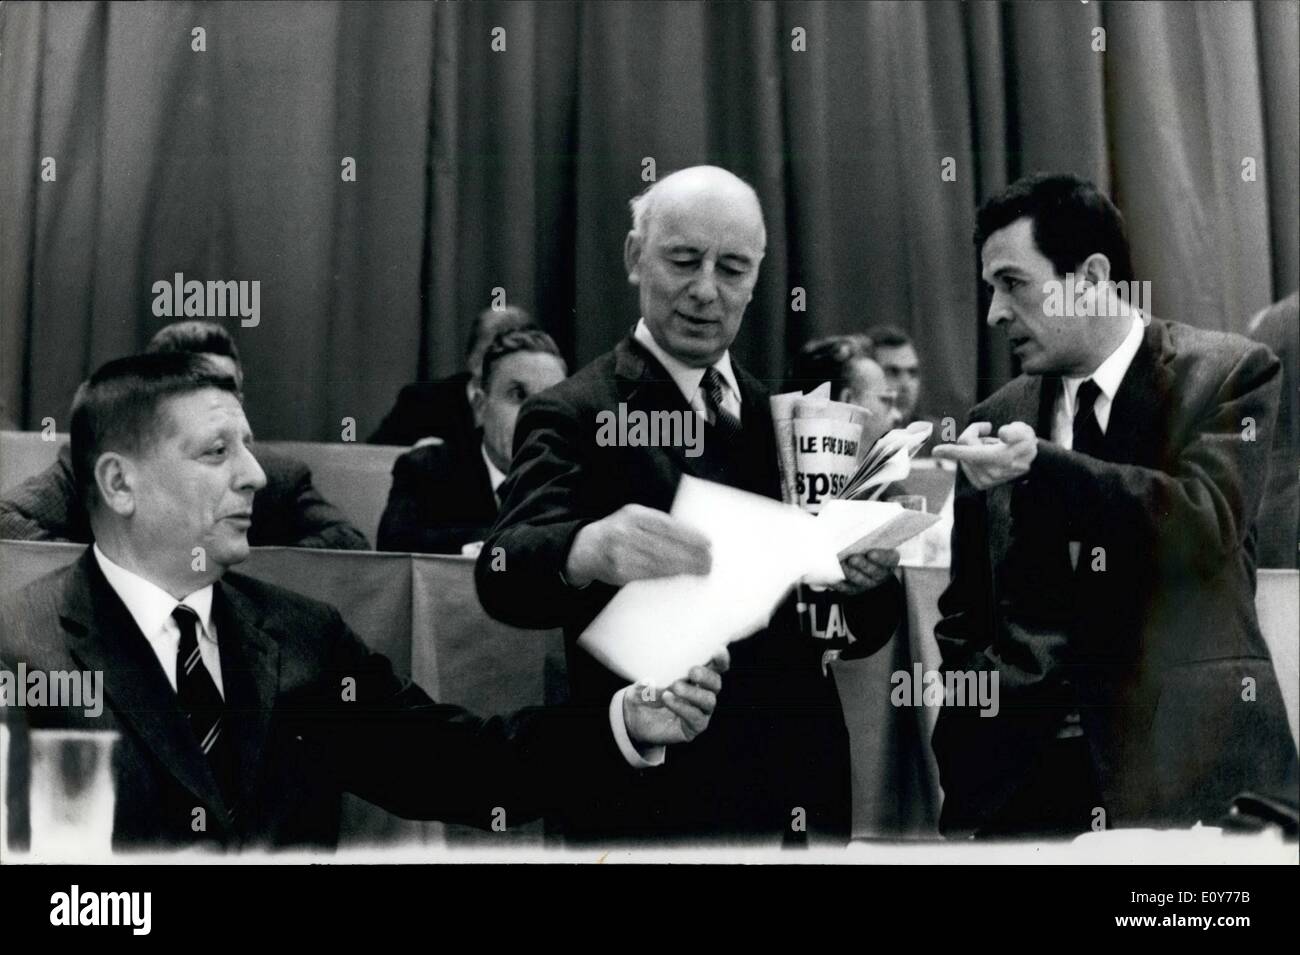 Gen 01, 1969 - Il XII Congresso nazionale del Partito Comunista Italiano ha luogo a Bologna, mostra fotografica da sinistra Giorgio Amendola, Giancarlo Pajetta e Enrico Berlinguer, i membri del Partito Comunista Italiano. Foto Stock